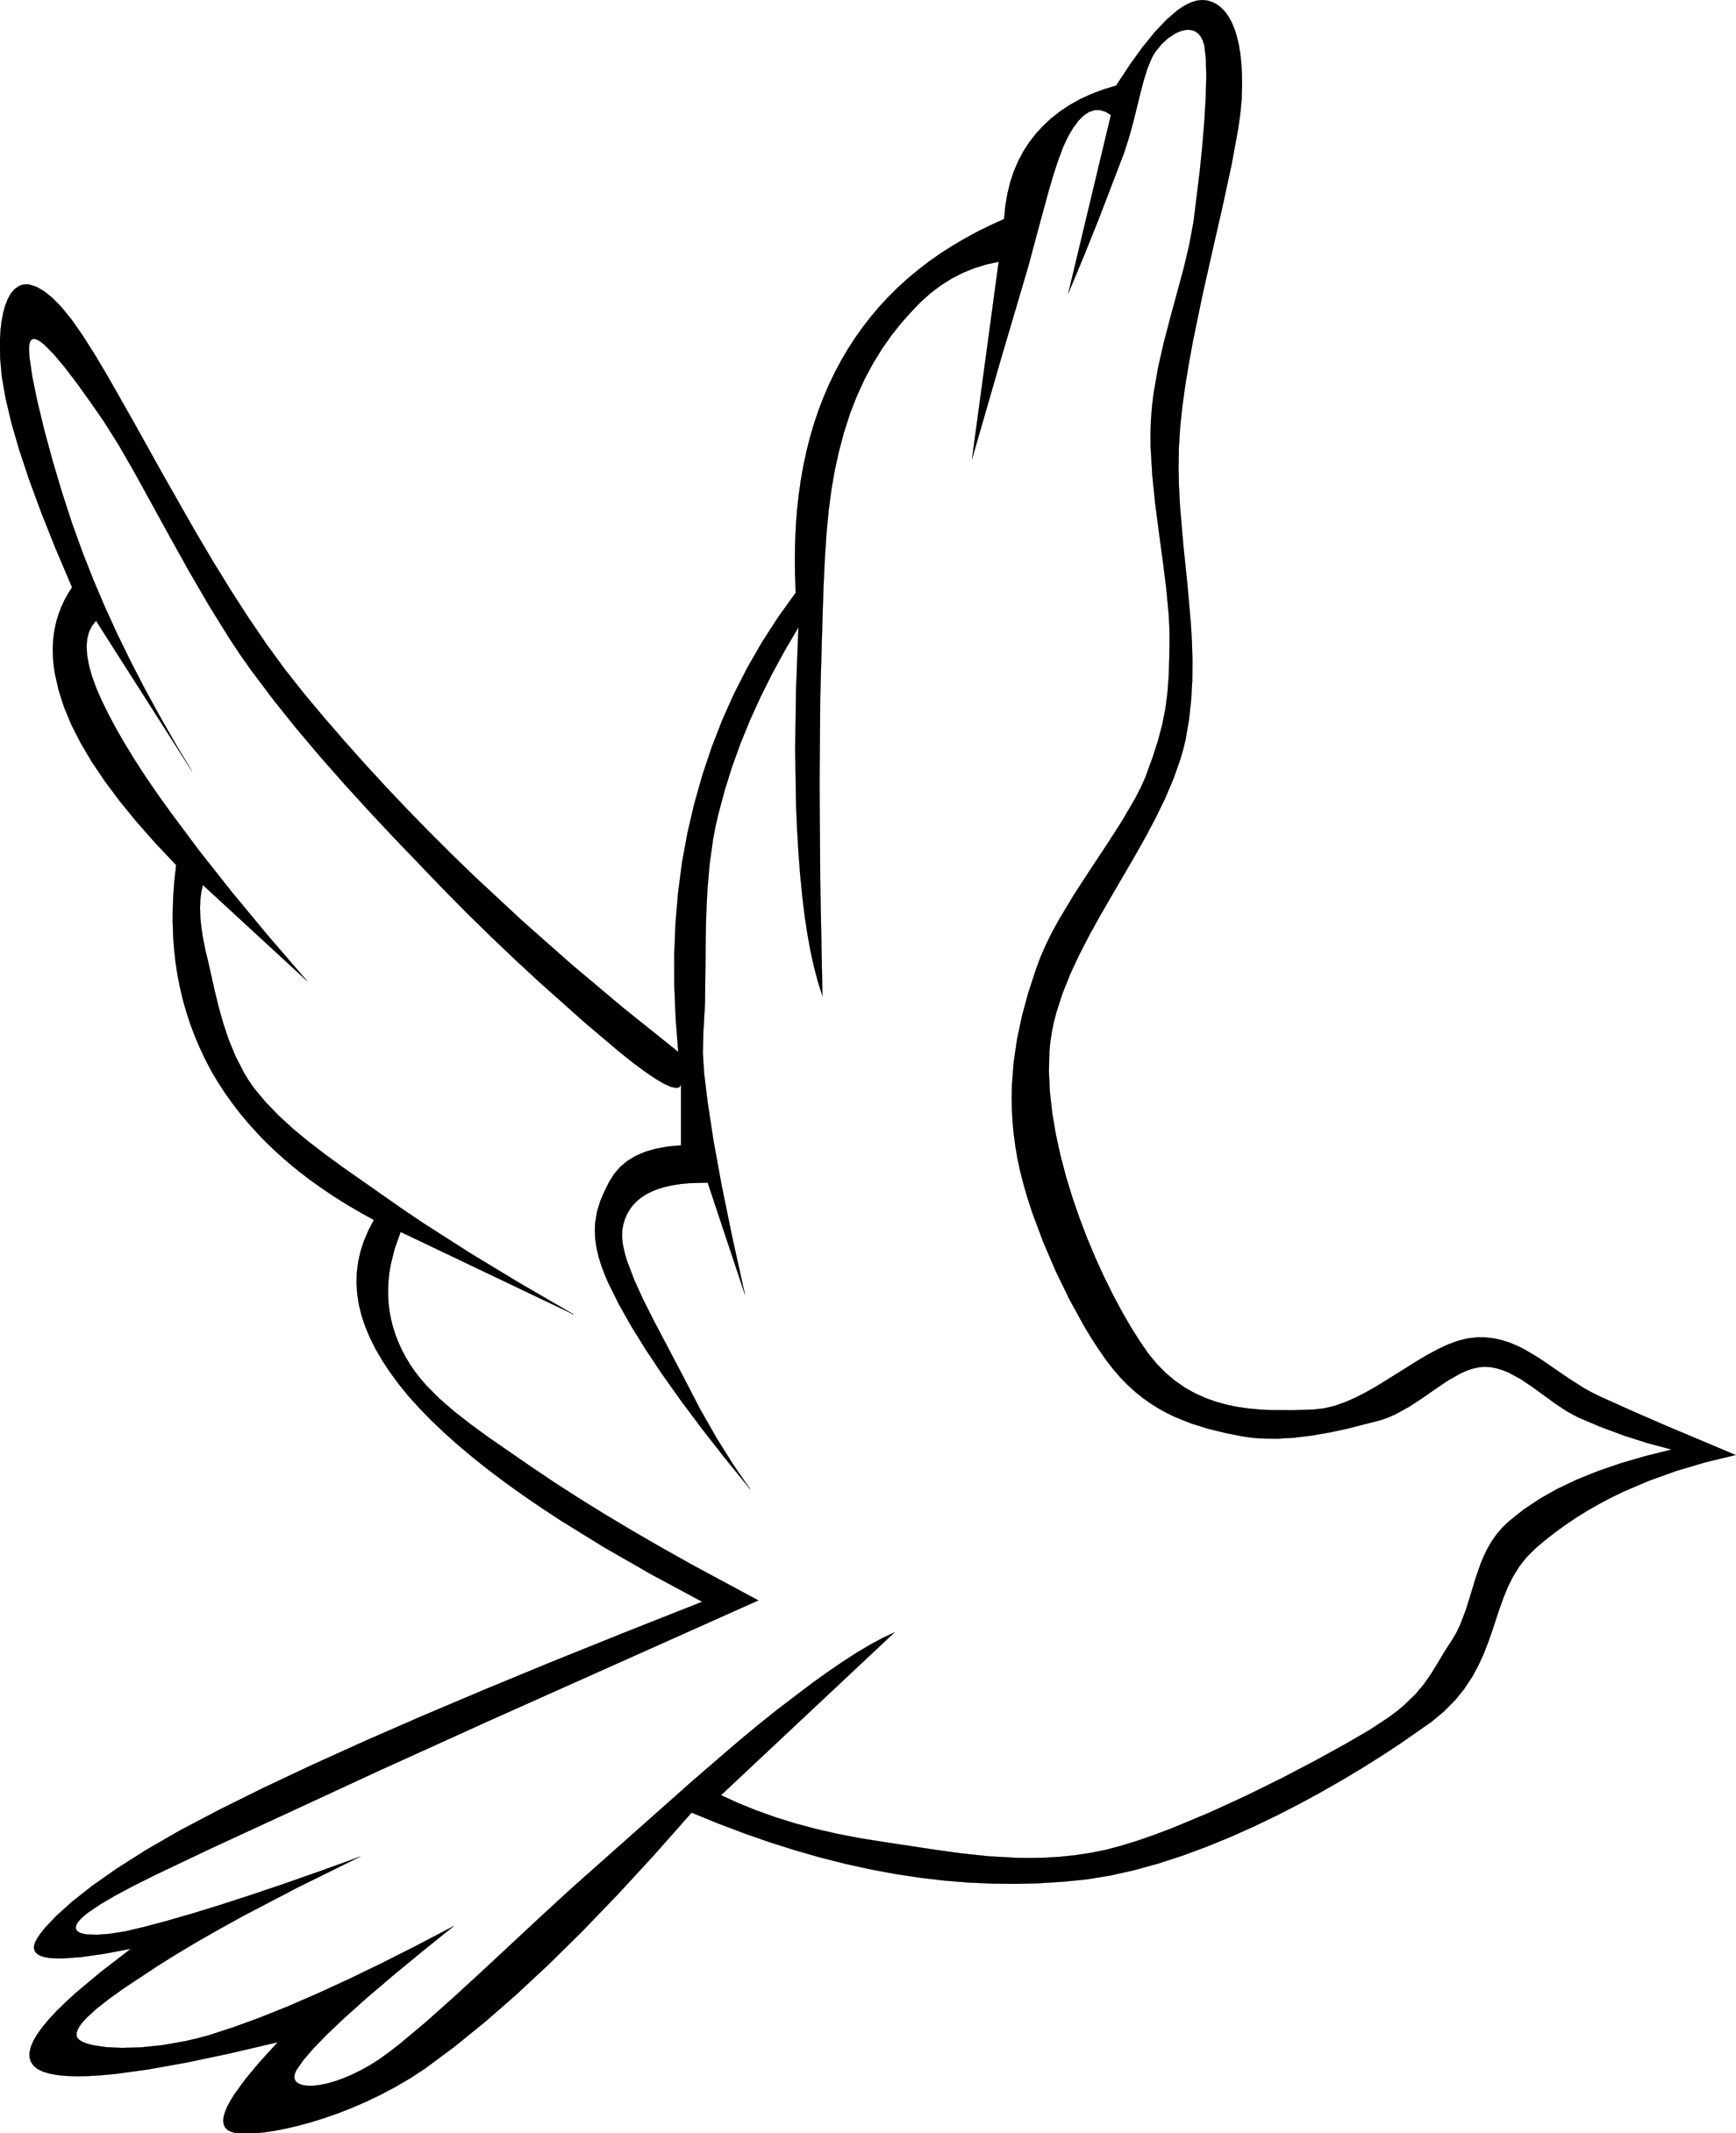 Clip Art Peace Dove - Clipart library